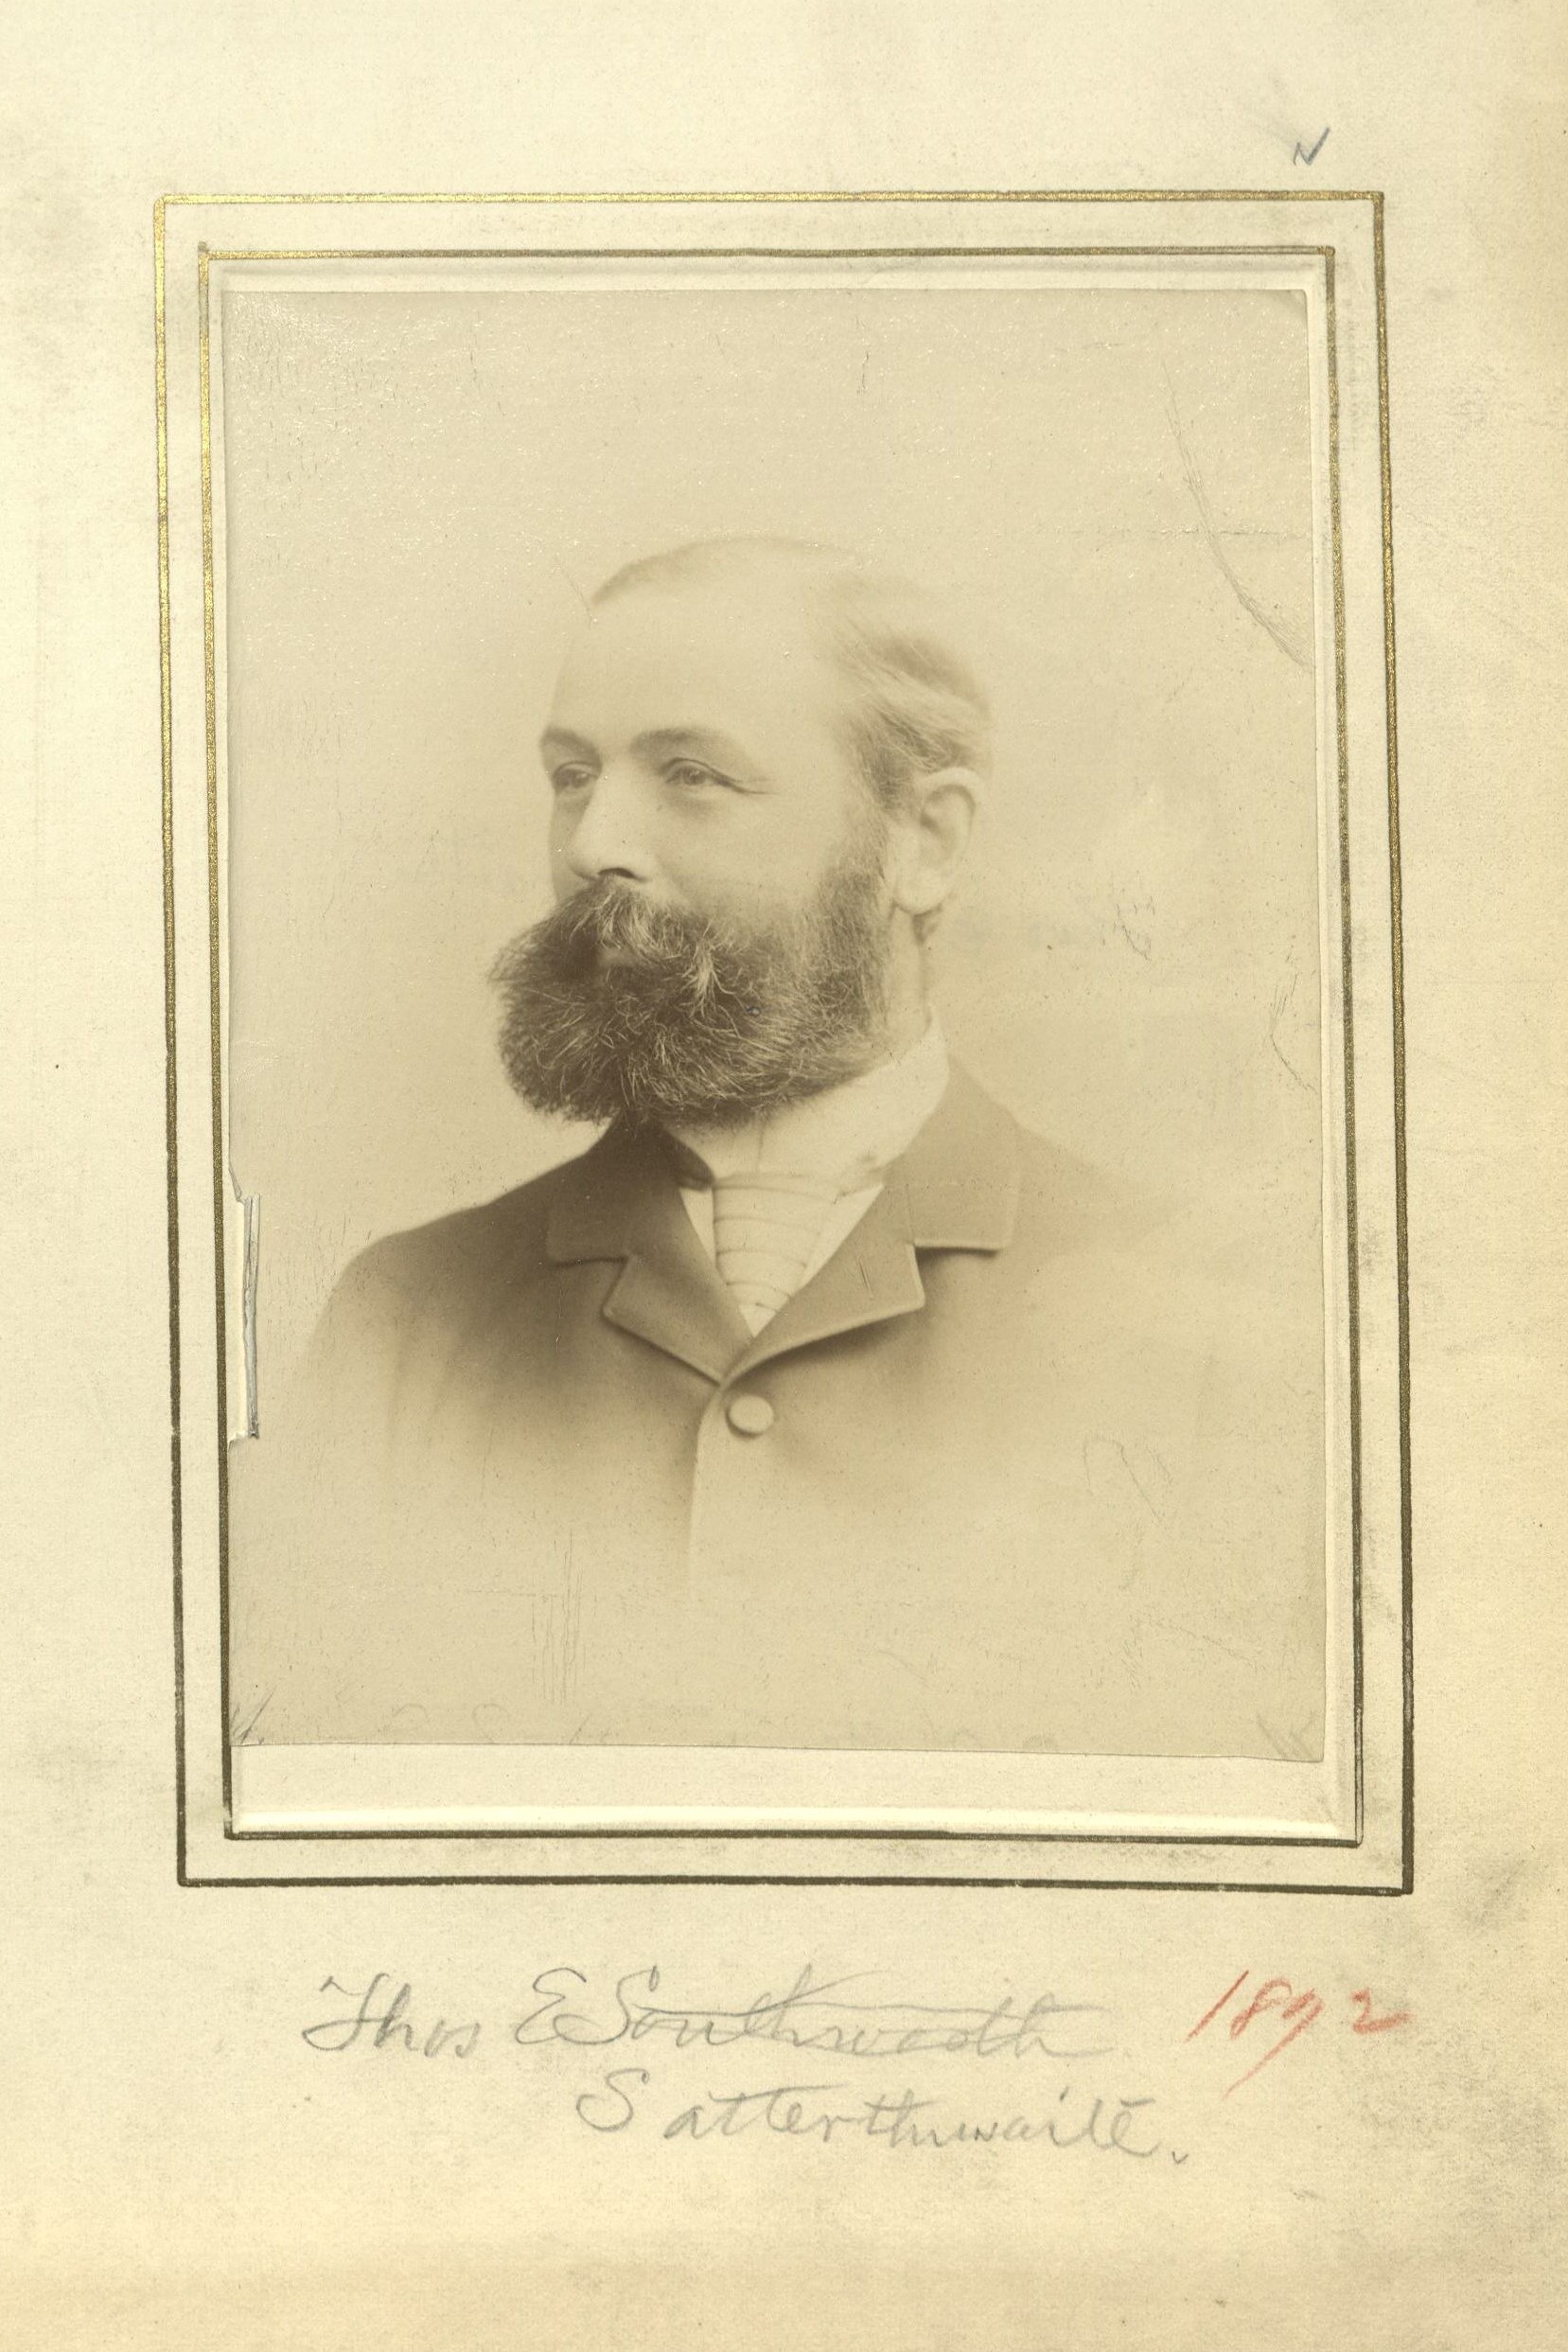 Member portrait of Thomas E. Satterthwaite